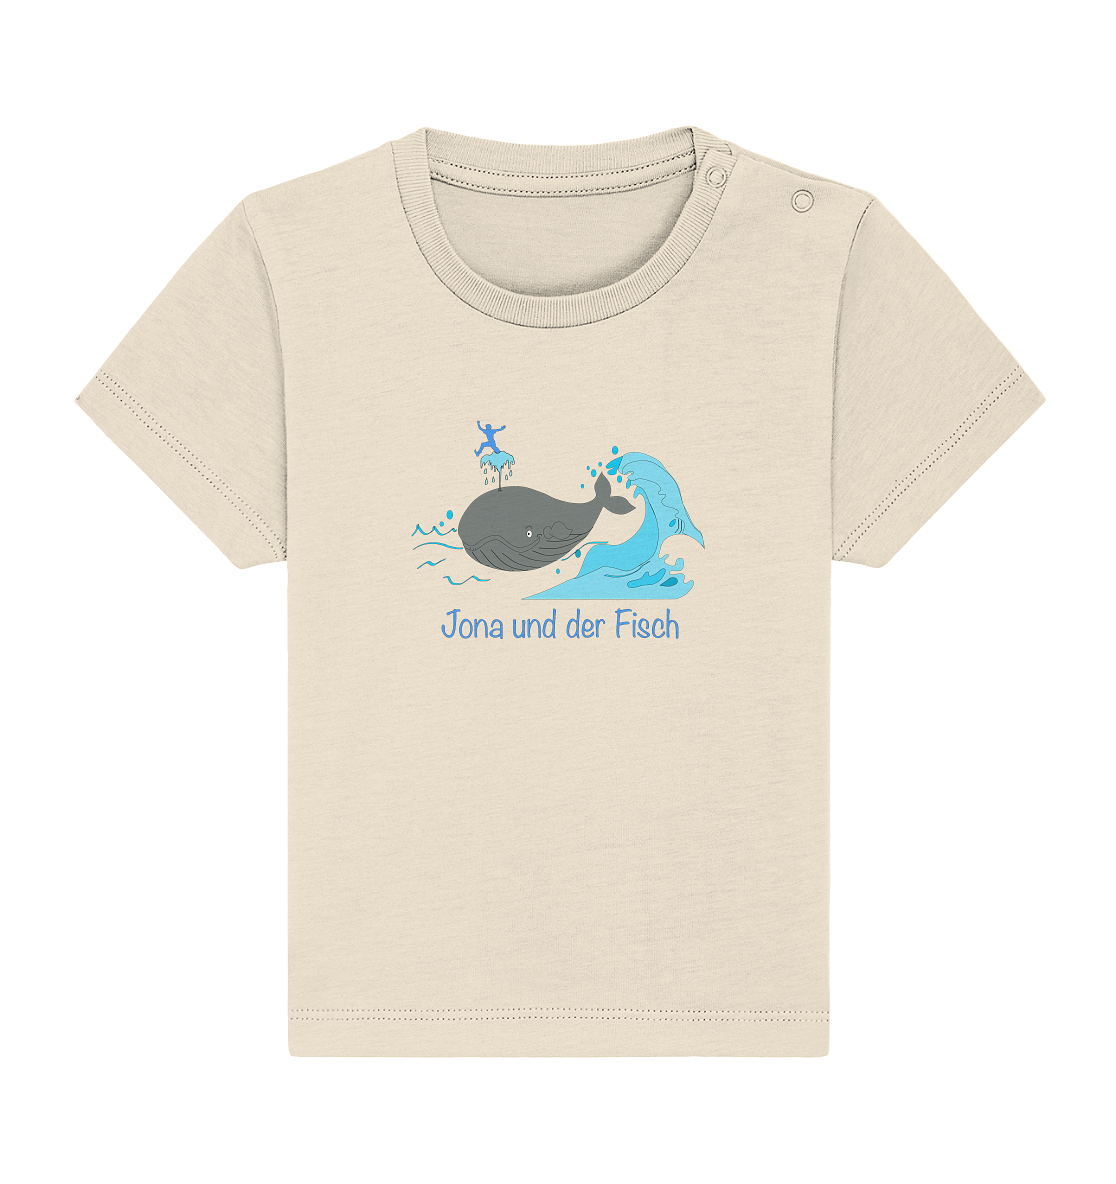 Jona und der Fisch - Baby Organic Shirt